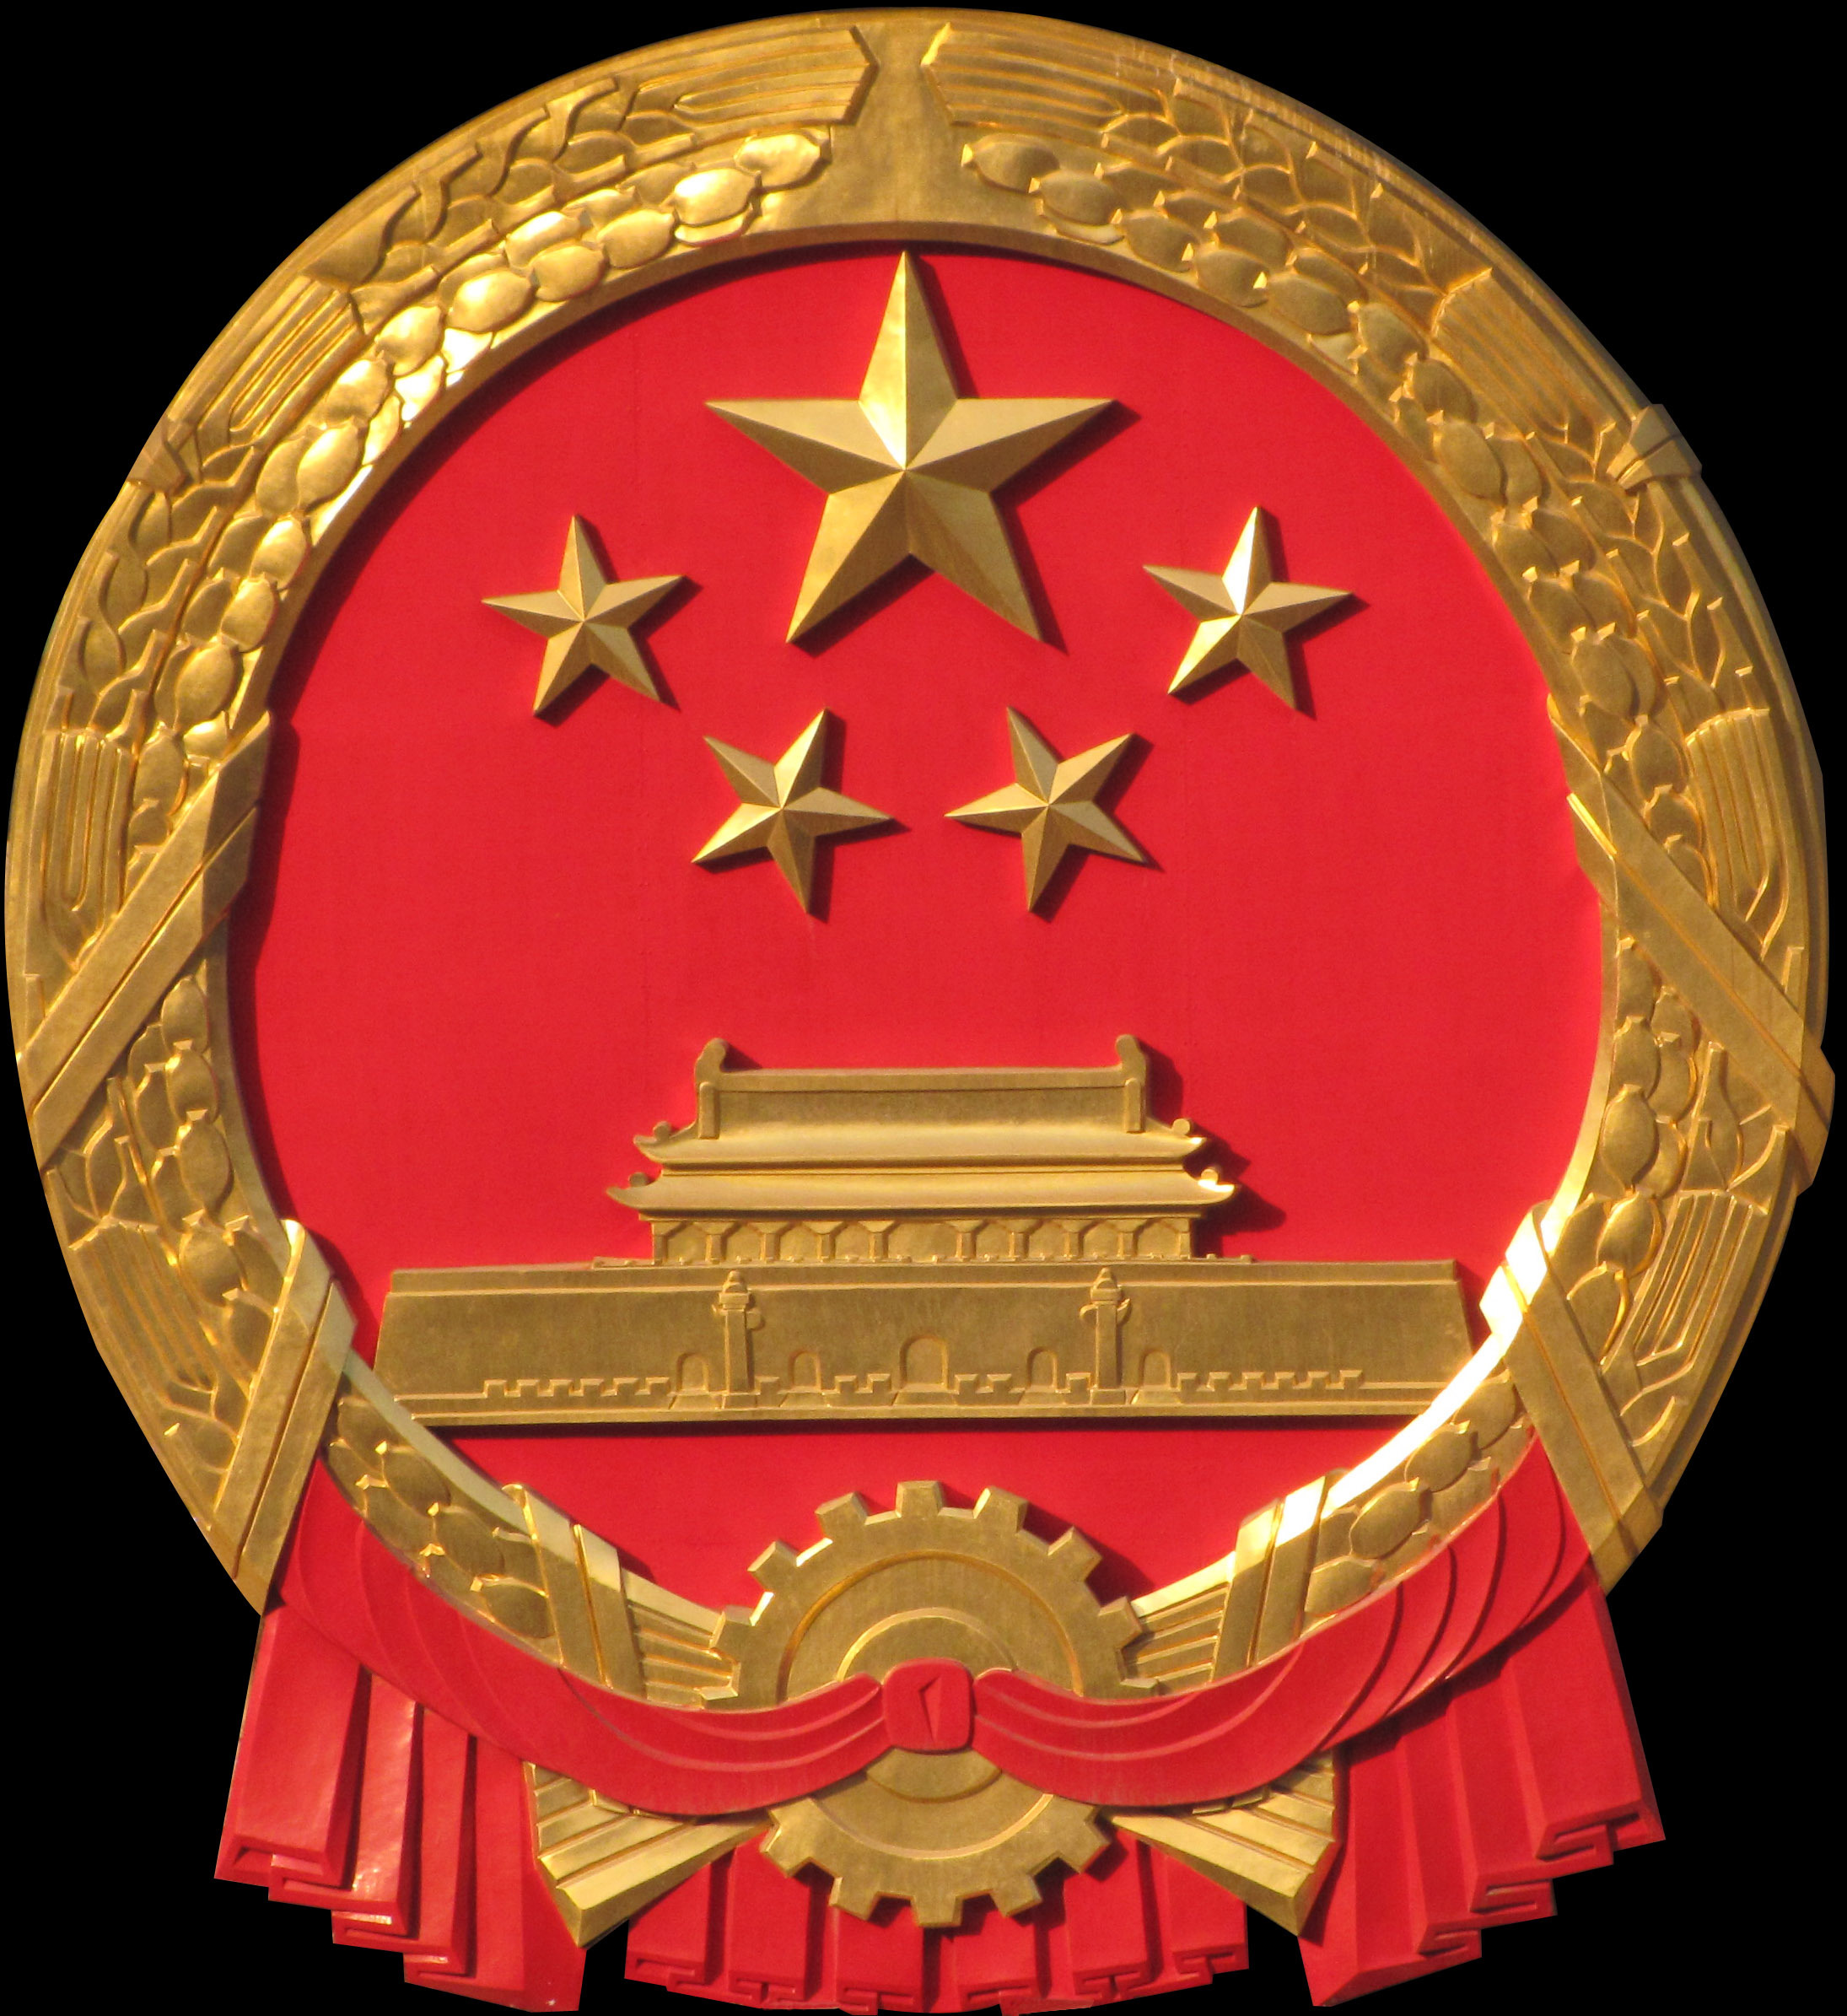 国家,齿轮象征工人阶级,谷穗象征农民阶级),象征中国人民自"五四"运动